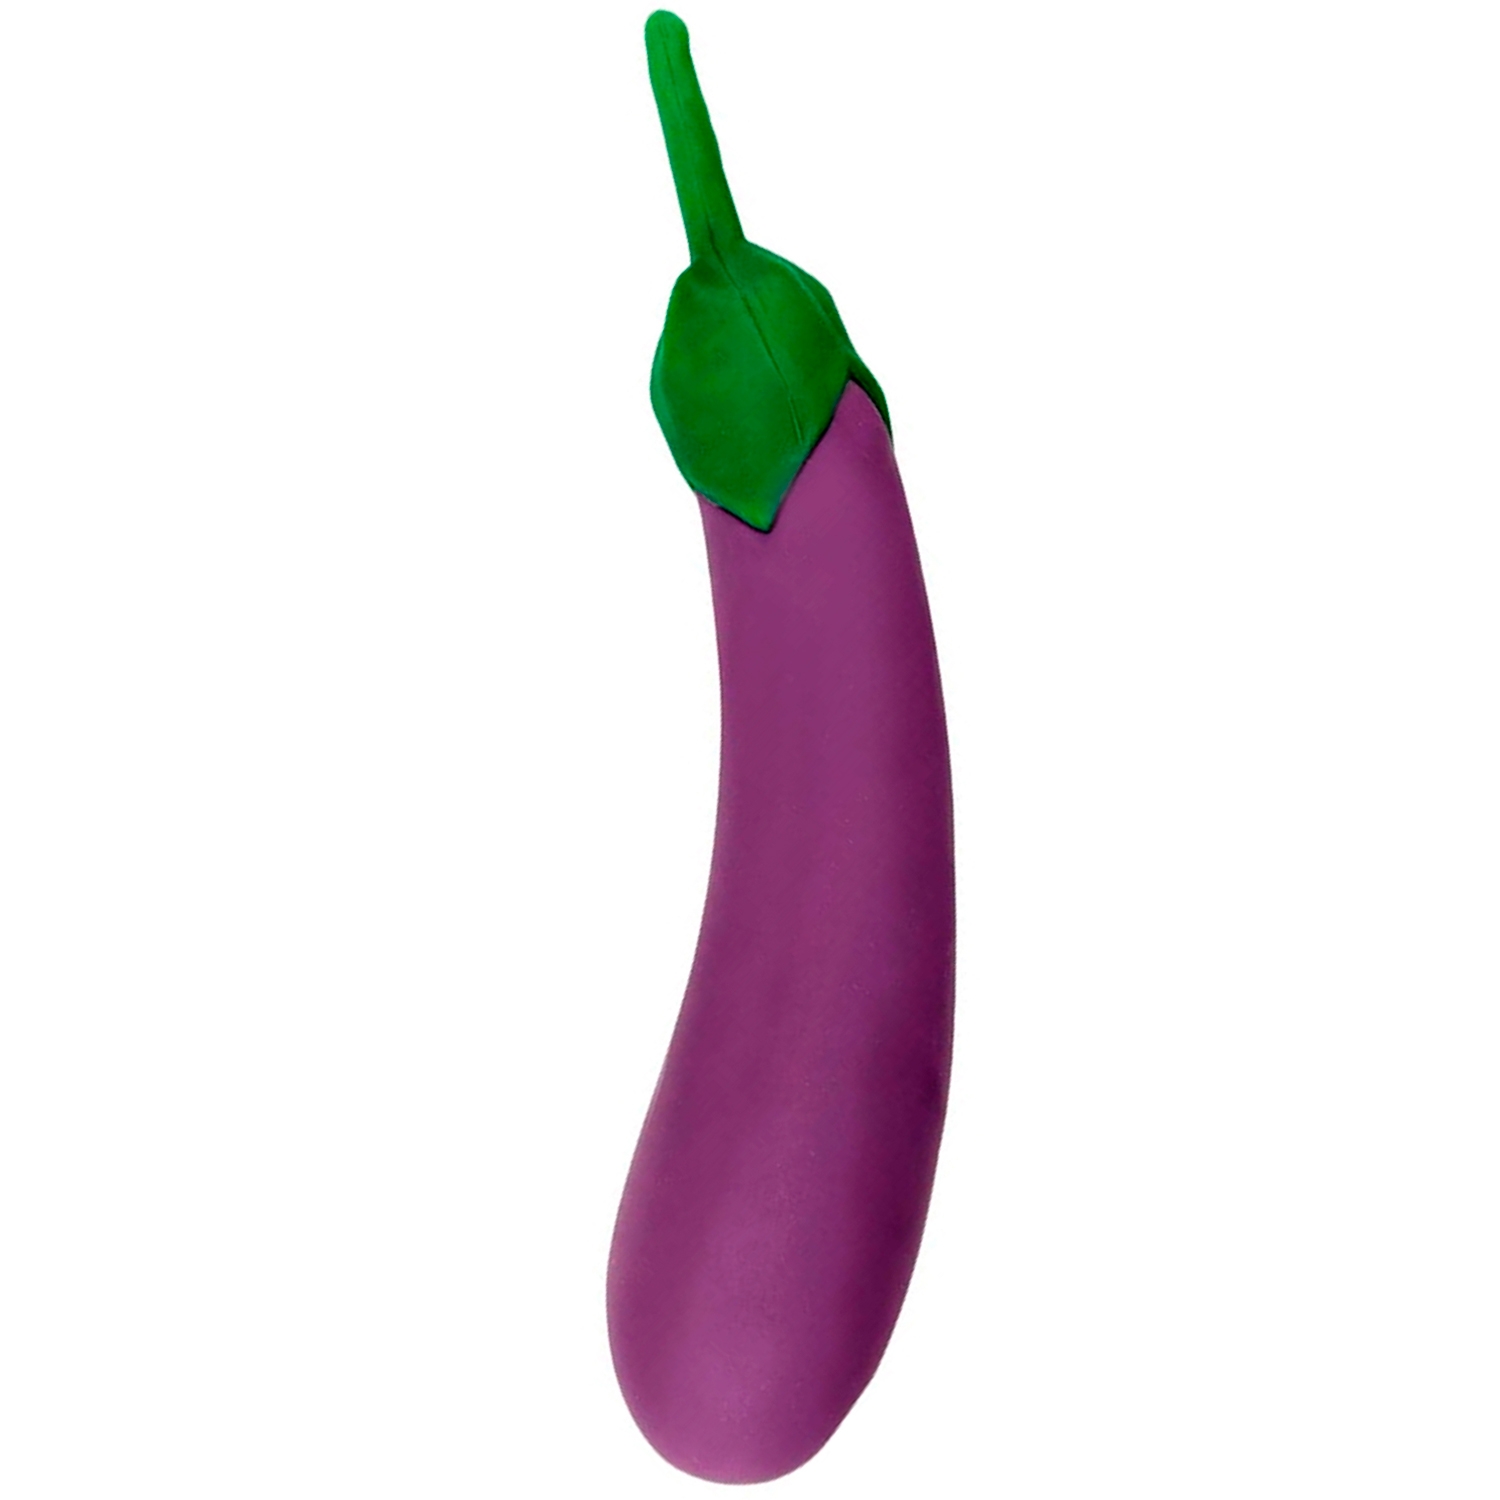 Gemüse Gemüse The Eggplant Dildovibrator - Lilla